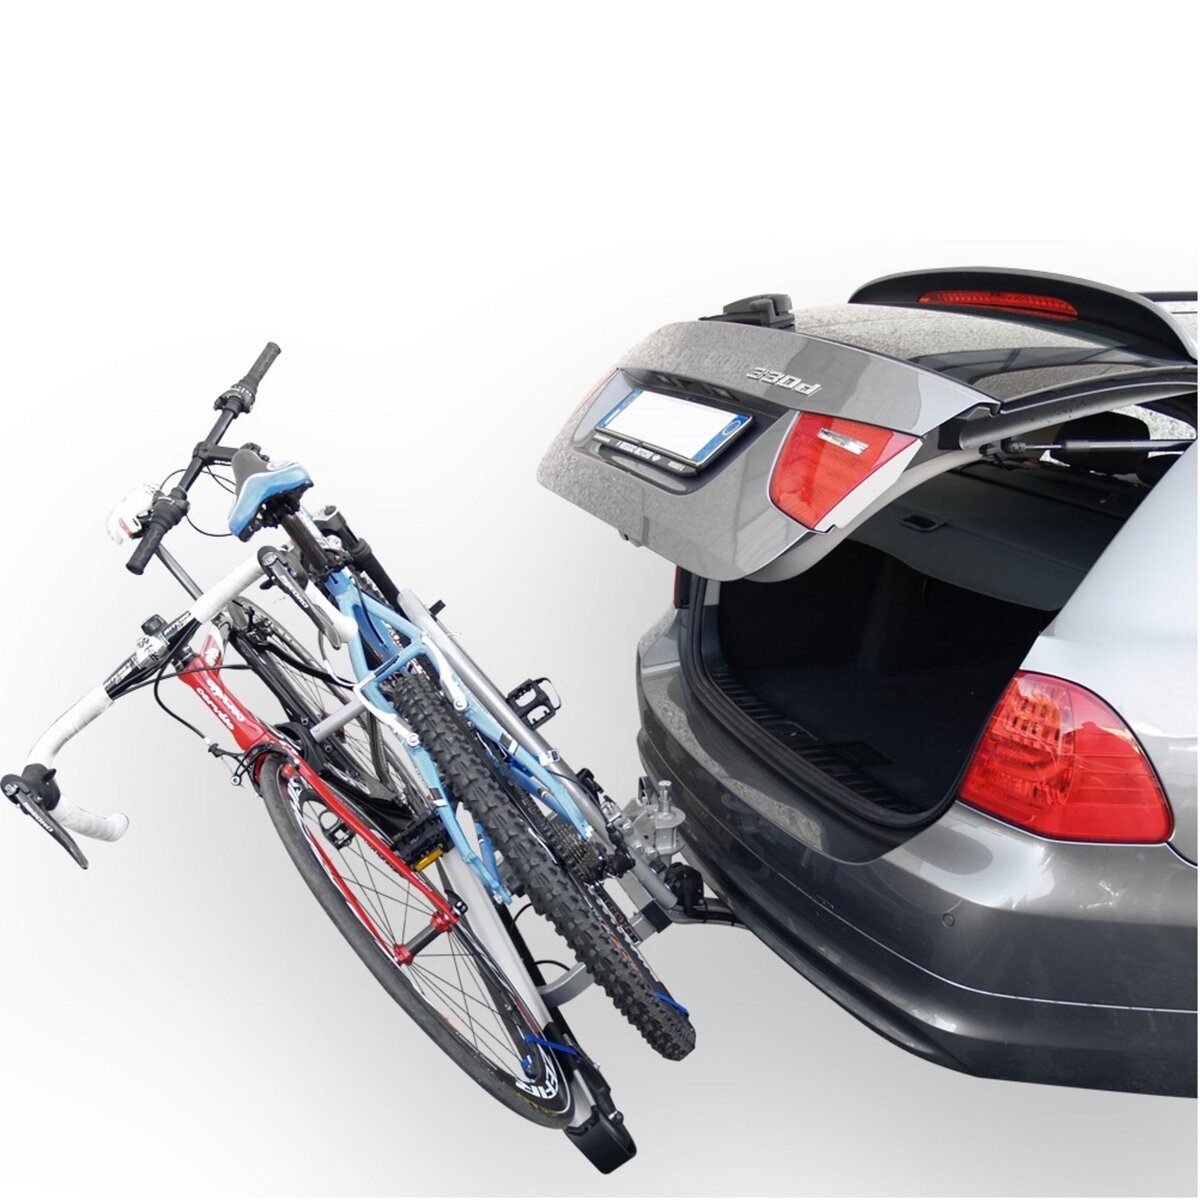 Porte-vélos pas cher : attelage, coffre, toit